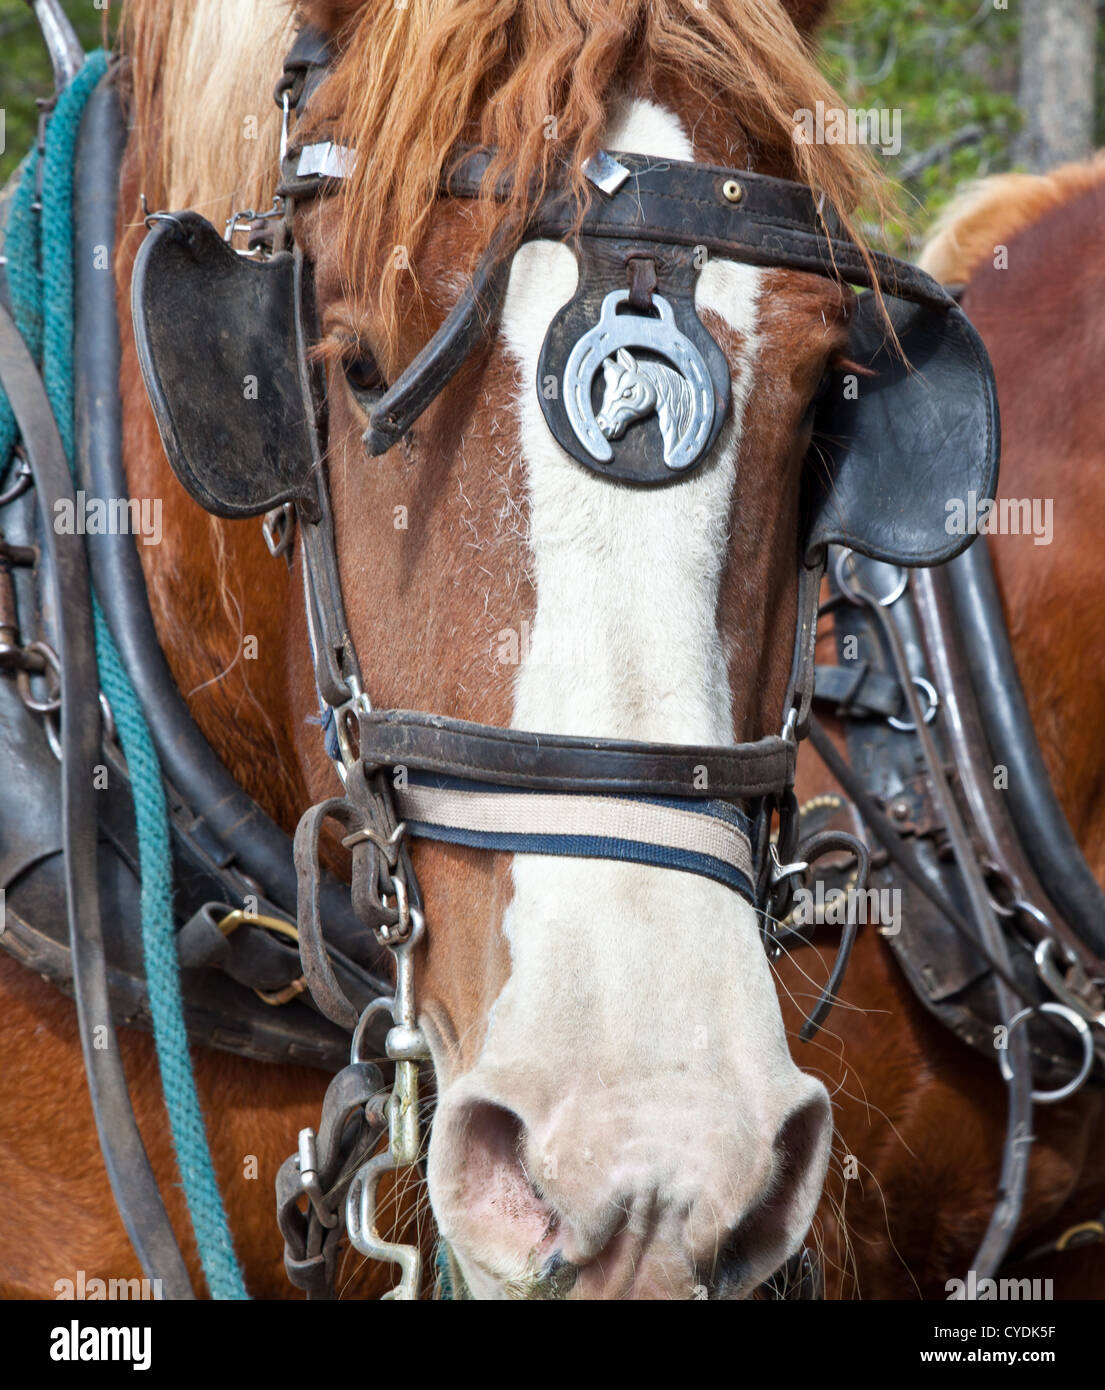 Un'immagine ravvicinata di un cavallo belga in piena tack agganciati ad un carro. Estes Park, Colorado. Foto Stock